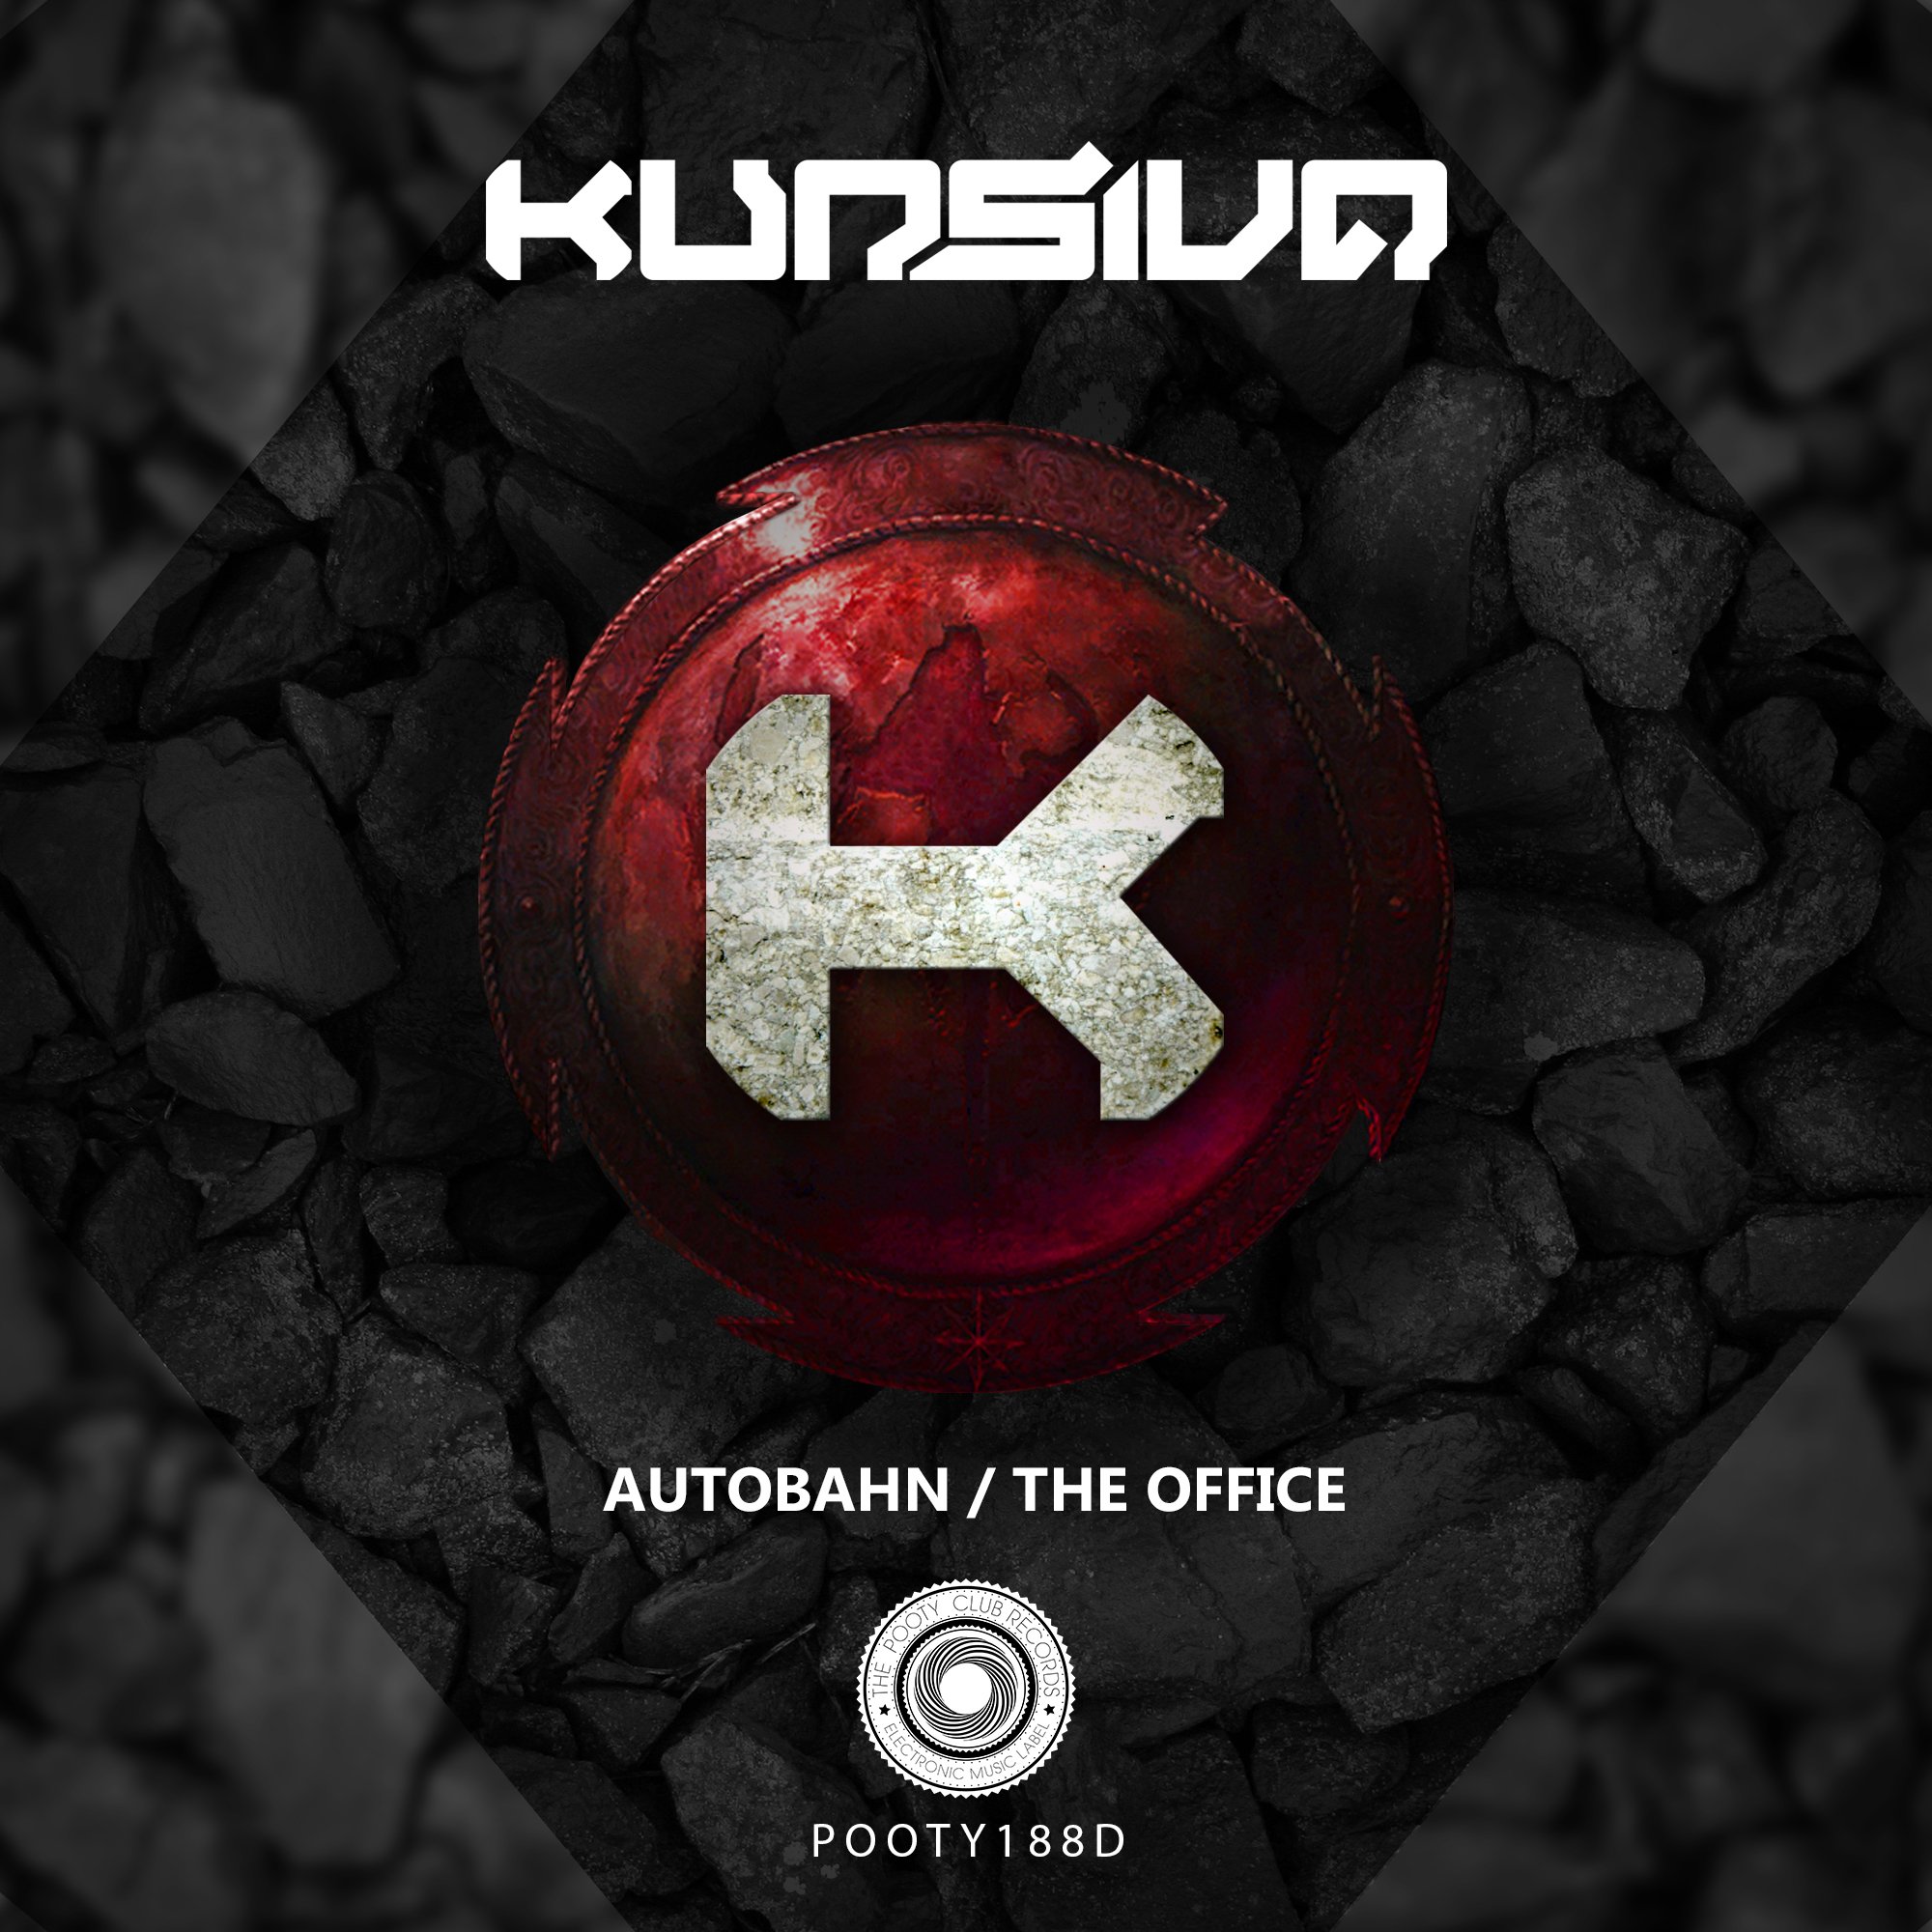 Autobahn / The Office by: Kursiva